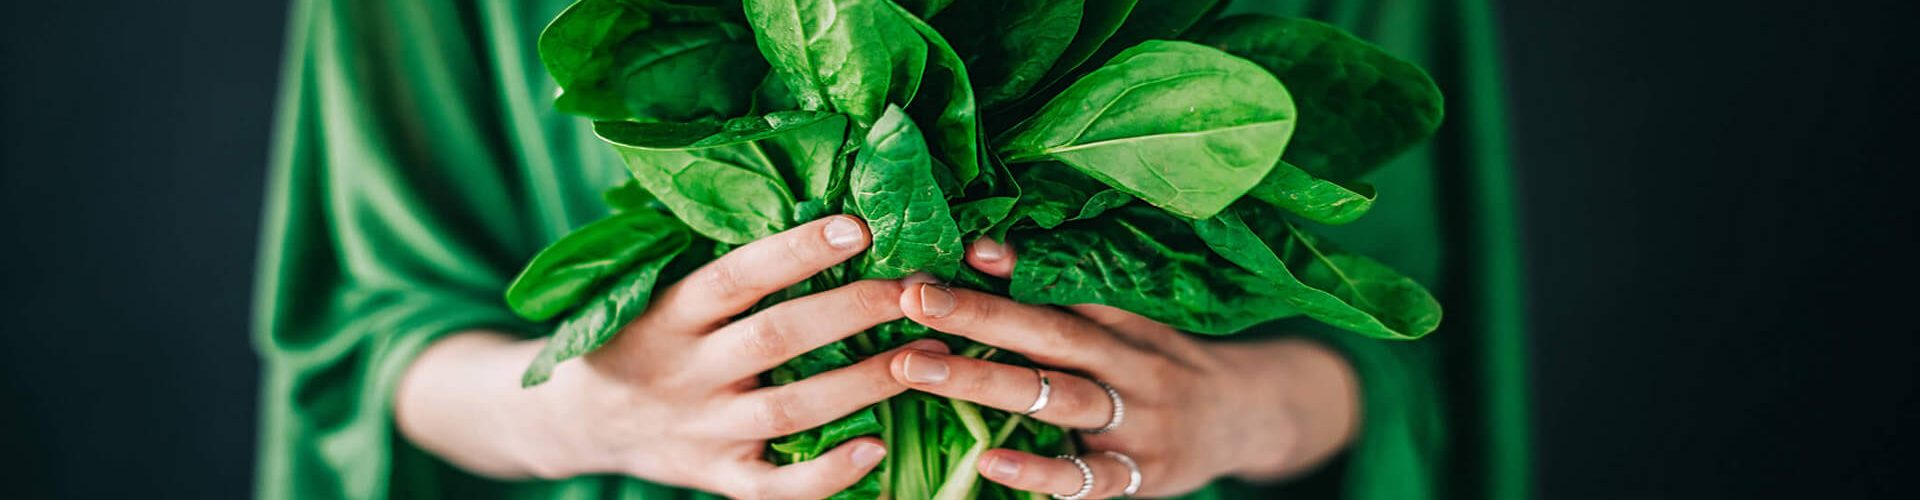 mãos de uma mulher segurando vegetais